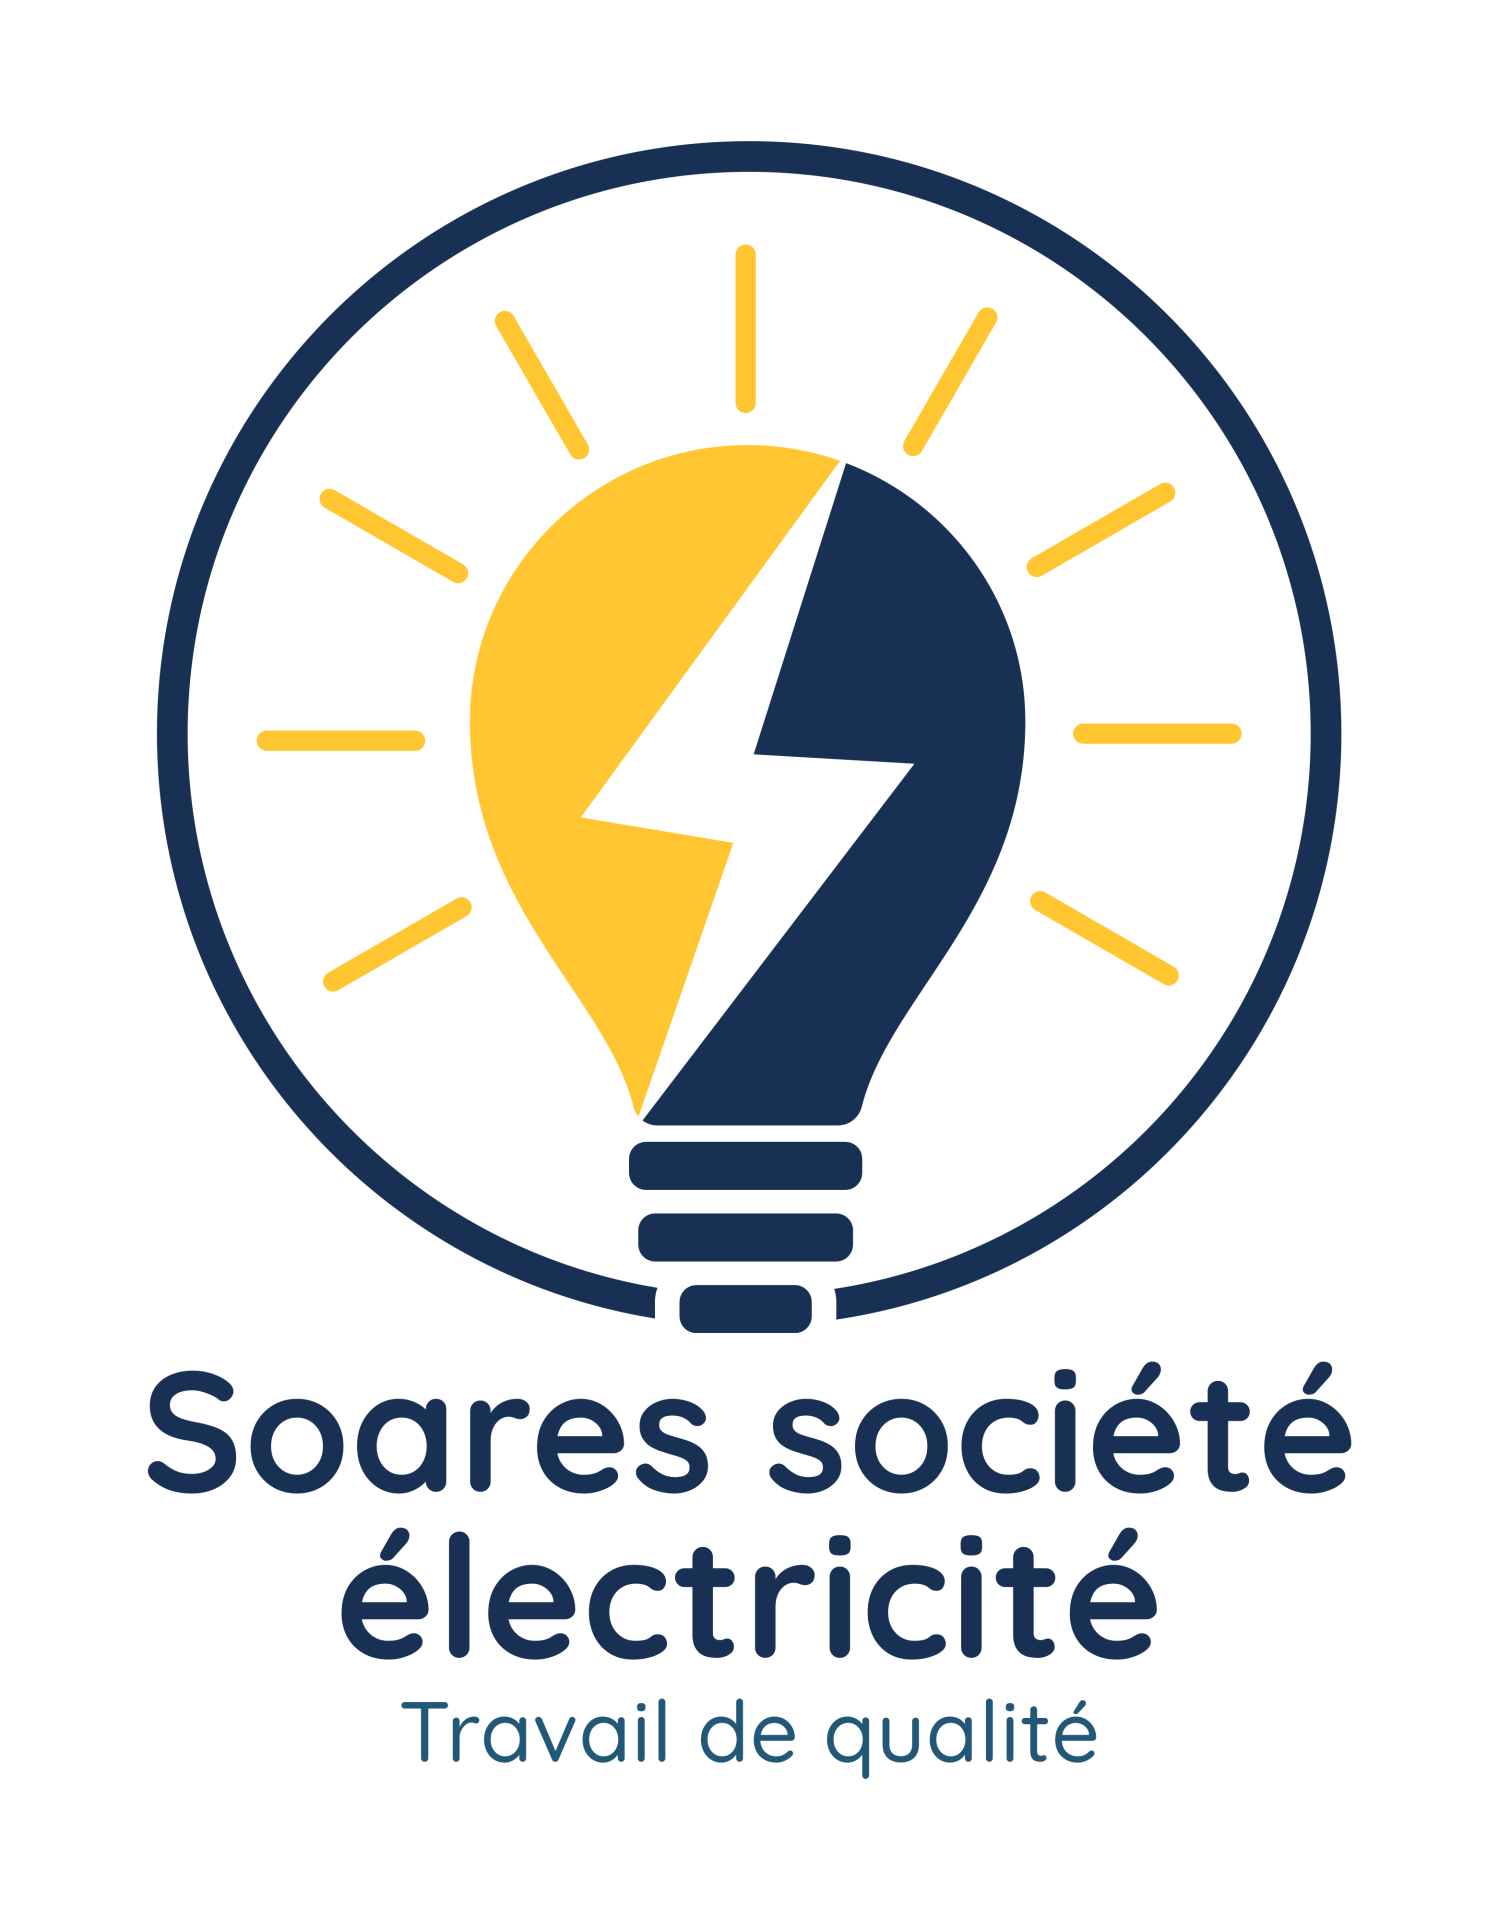 Soares société électricité